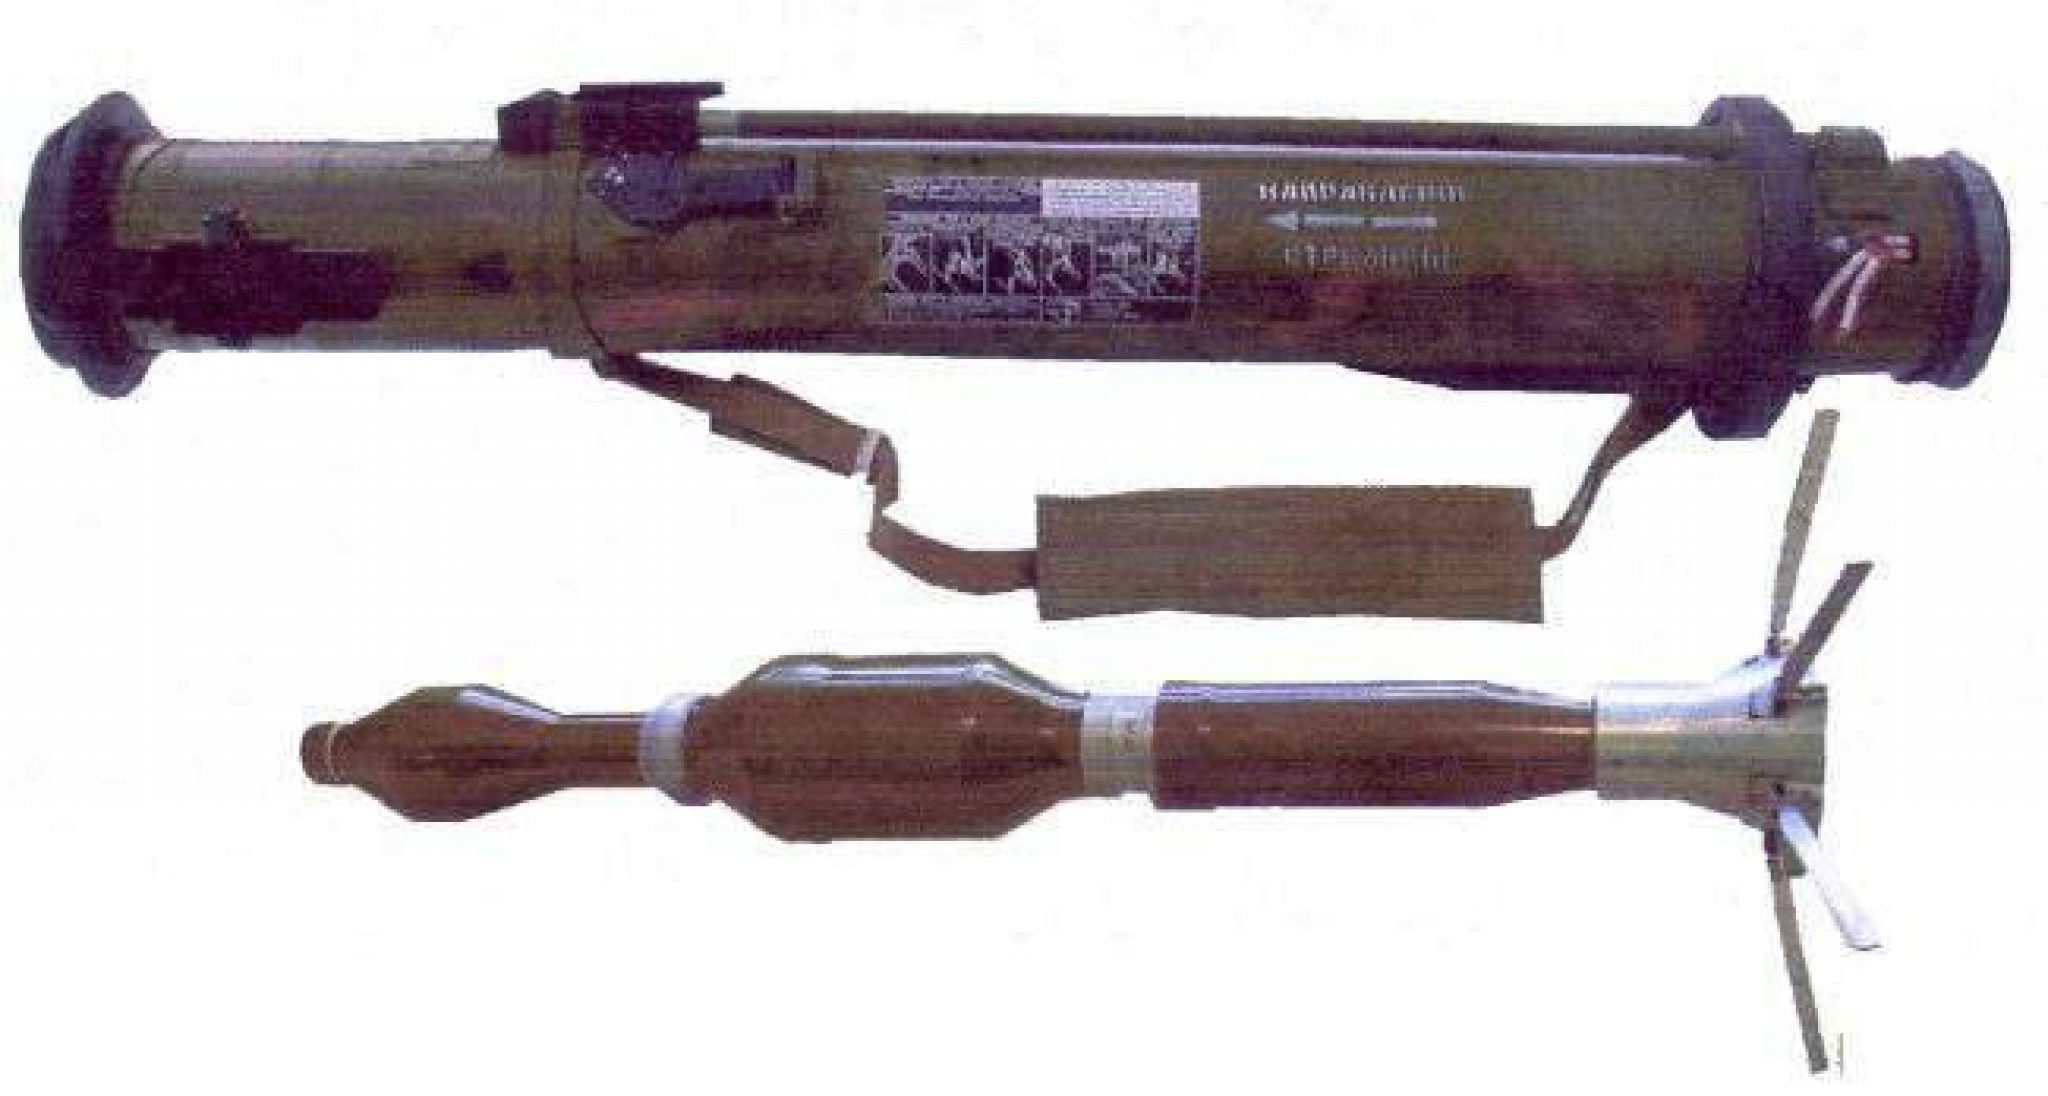 Рпг 28 противотанковая. 105-Мм реактивная штурмовая граната РШГ-1 «таволга-1». Гранатомёт РПГ-27 «таволга». Реактивная граната РШГ-1. Реактивная многофункциональная граната РМГ.